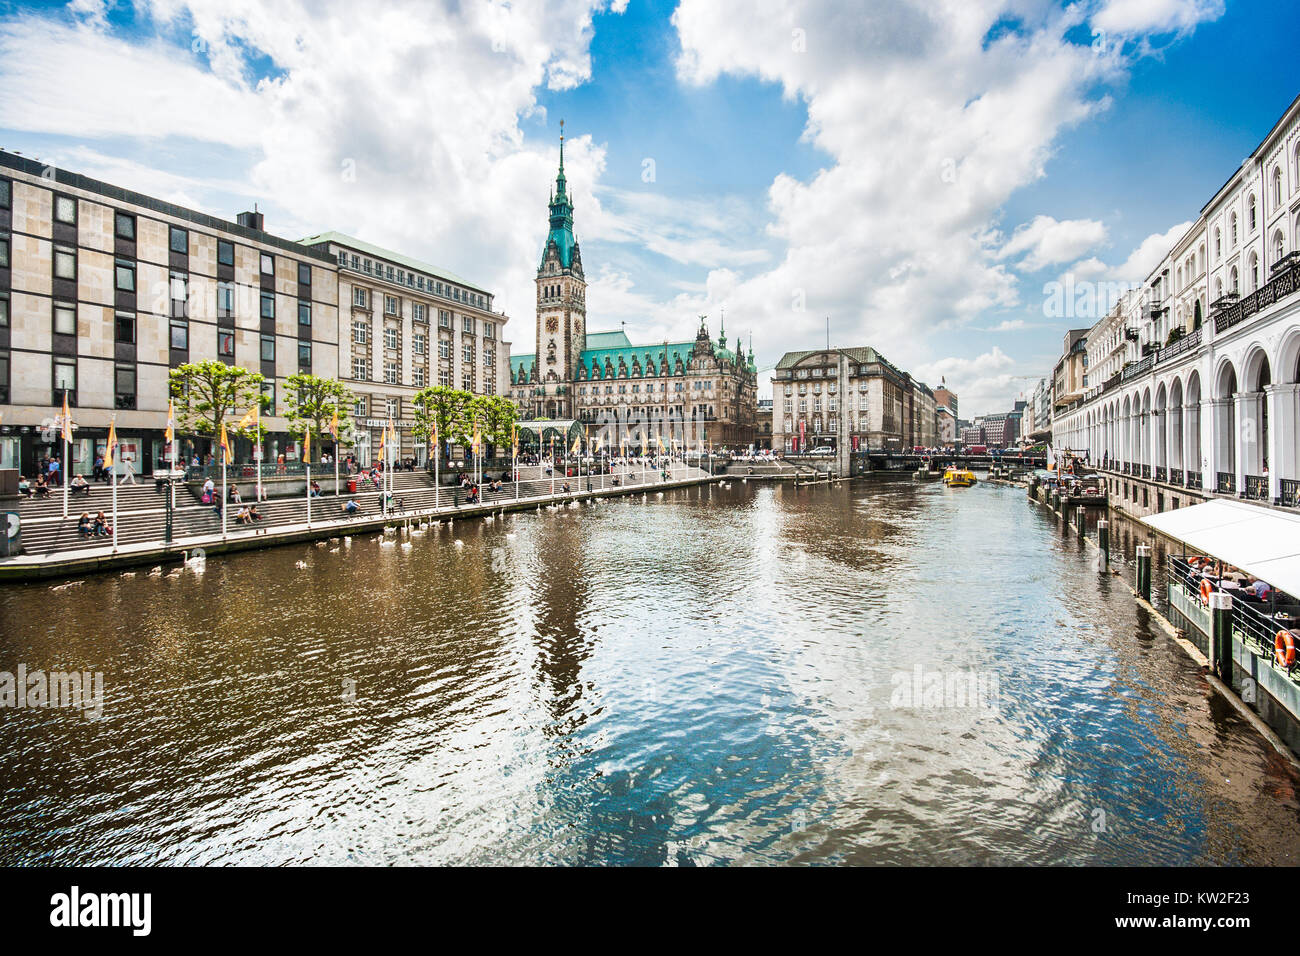 Schöne Aussicht auf die Hamburger Innenstadt mit Rathaus und Alster Fluss, Deutschland Stockfoto